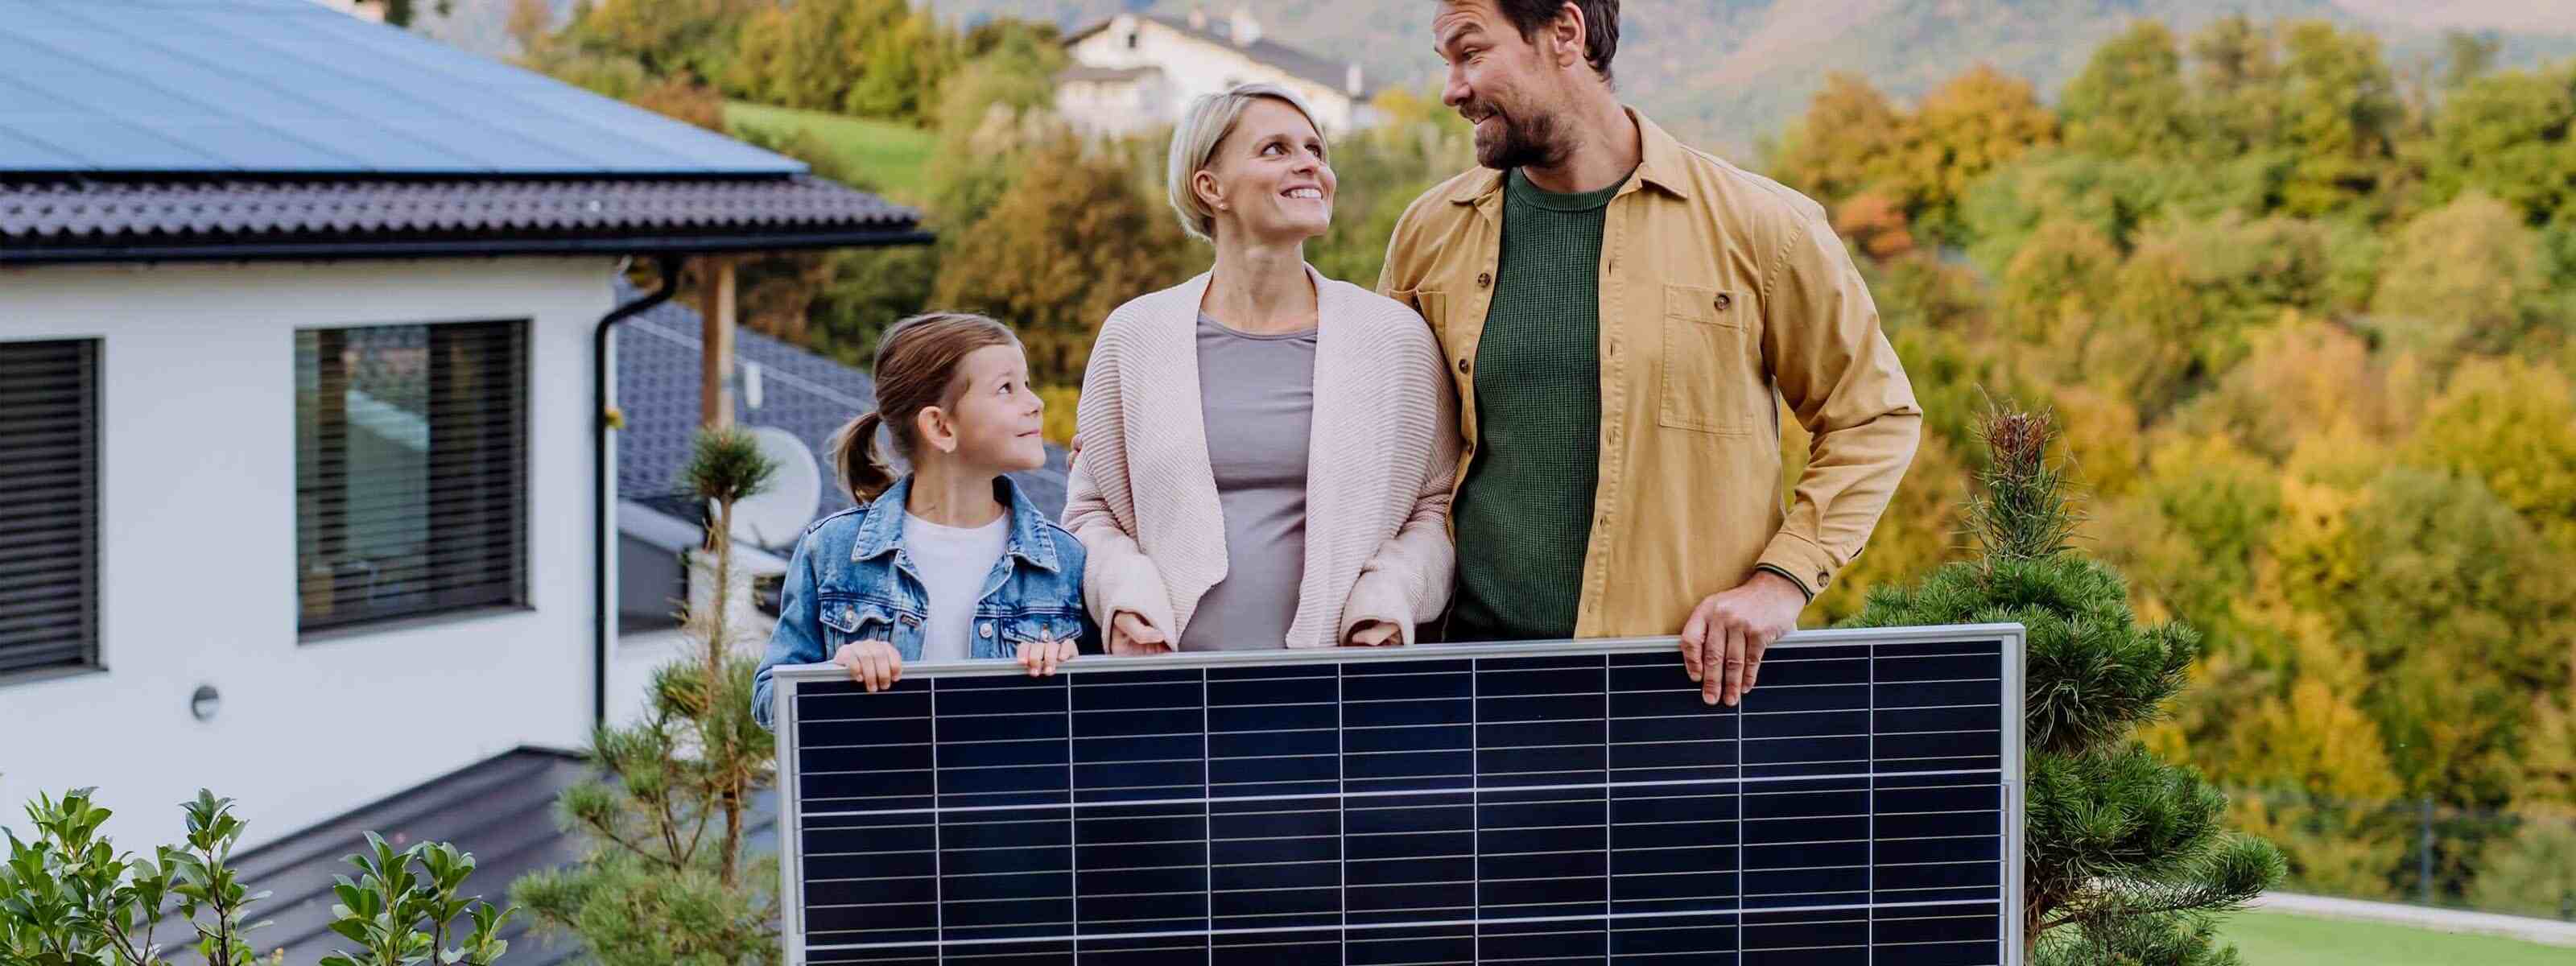 Eine Familie hält eine Solaranlage vor ihrem Haus. Beitrag zur Energiewende und Kostenersparnis durch Photovoltaik